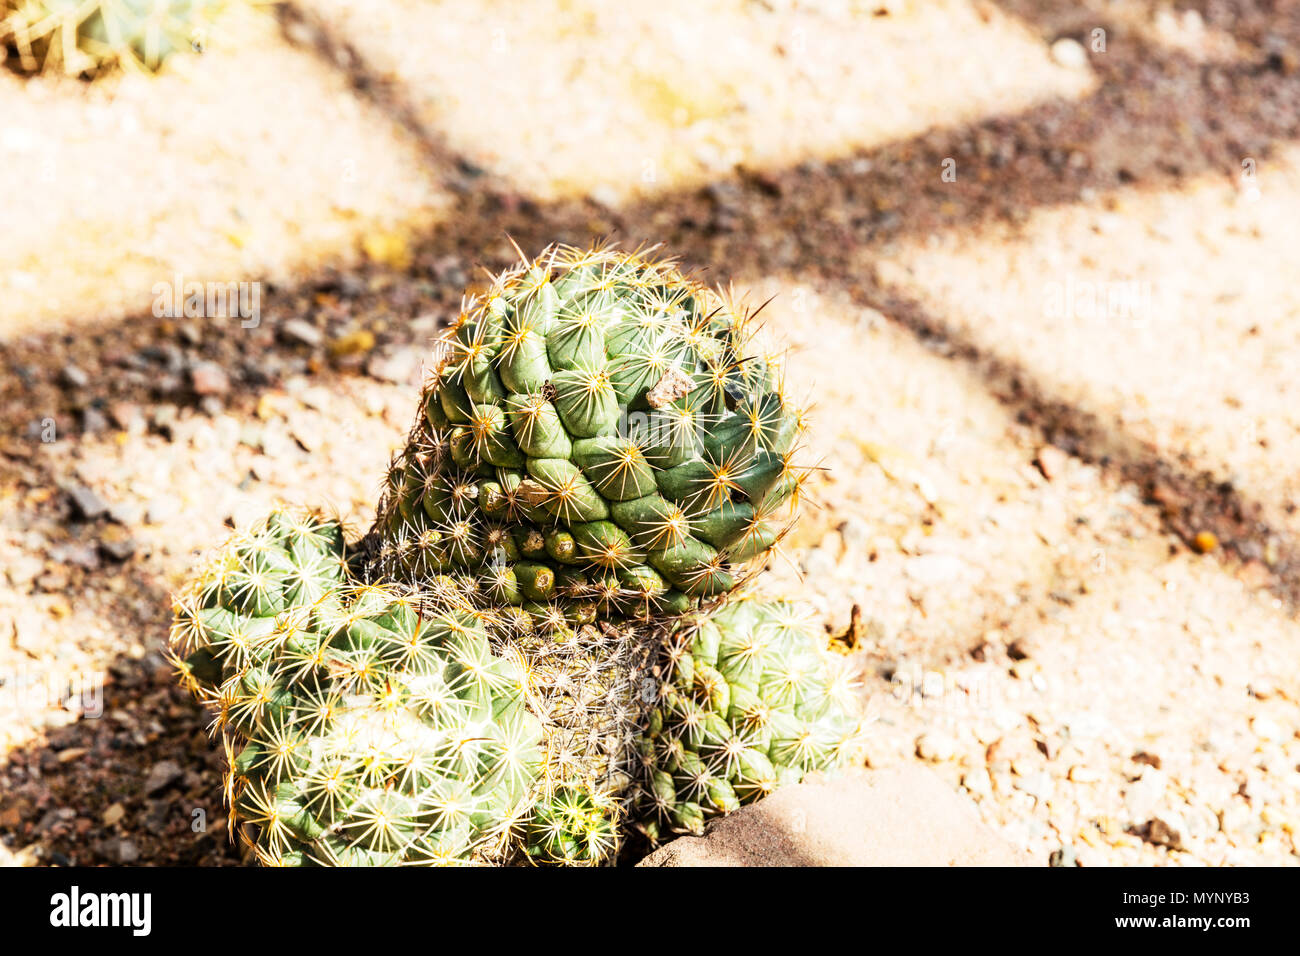 Rhinoceros Cactus, Coryphantha cornifera, Coryphantha echinus, biznaga partida erizo, Rhinoceros Cacti, Mexican cacti, Mexican Cactus, Cactus, plant Stock Photo